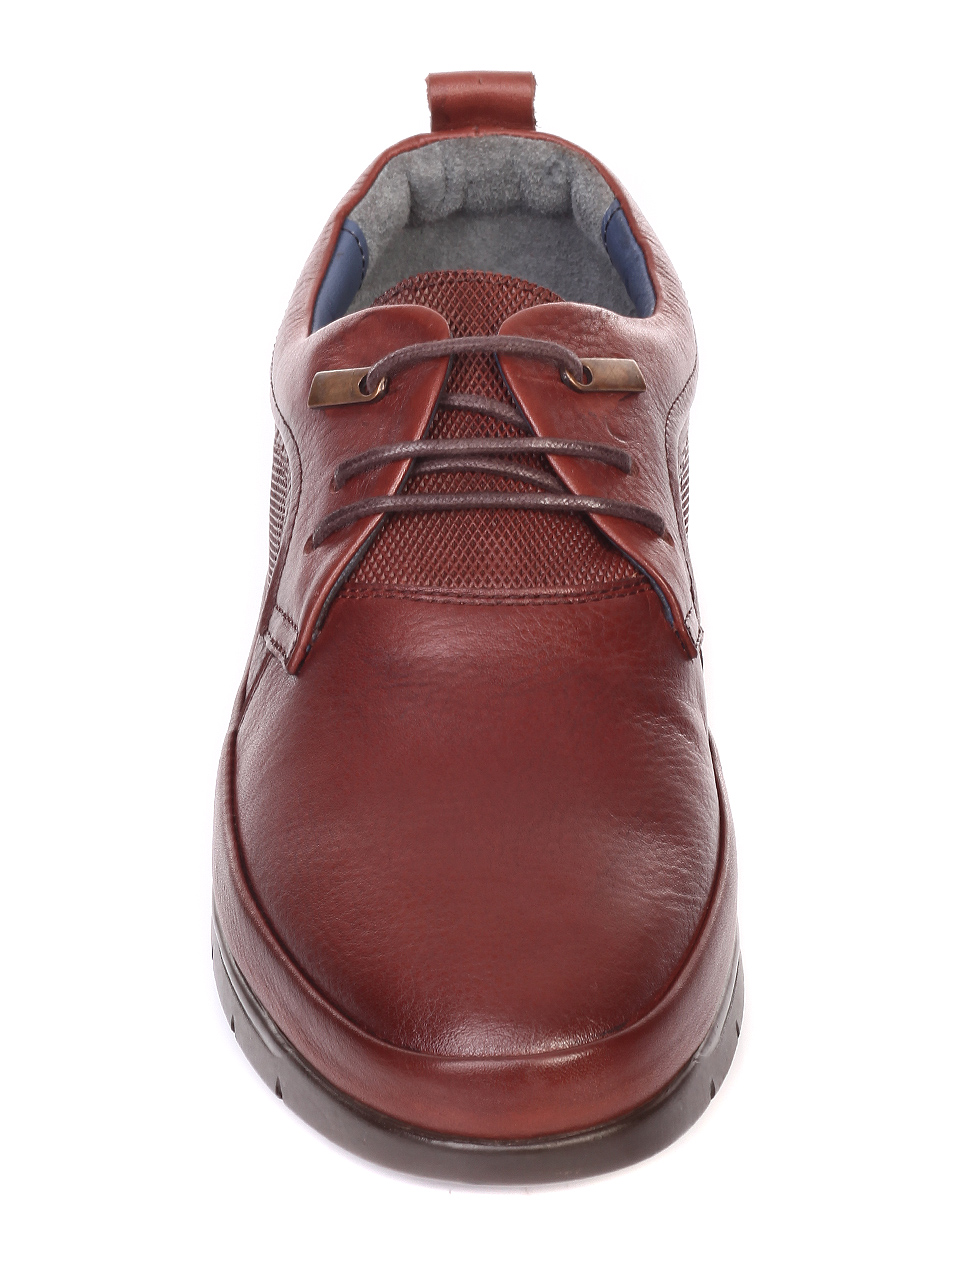 Ежедневни мъжки обувки от естествена кожа 6567 brown